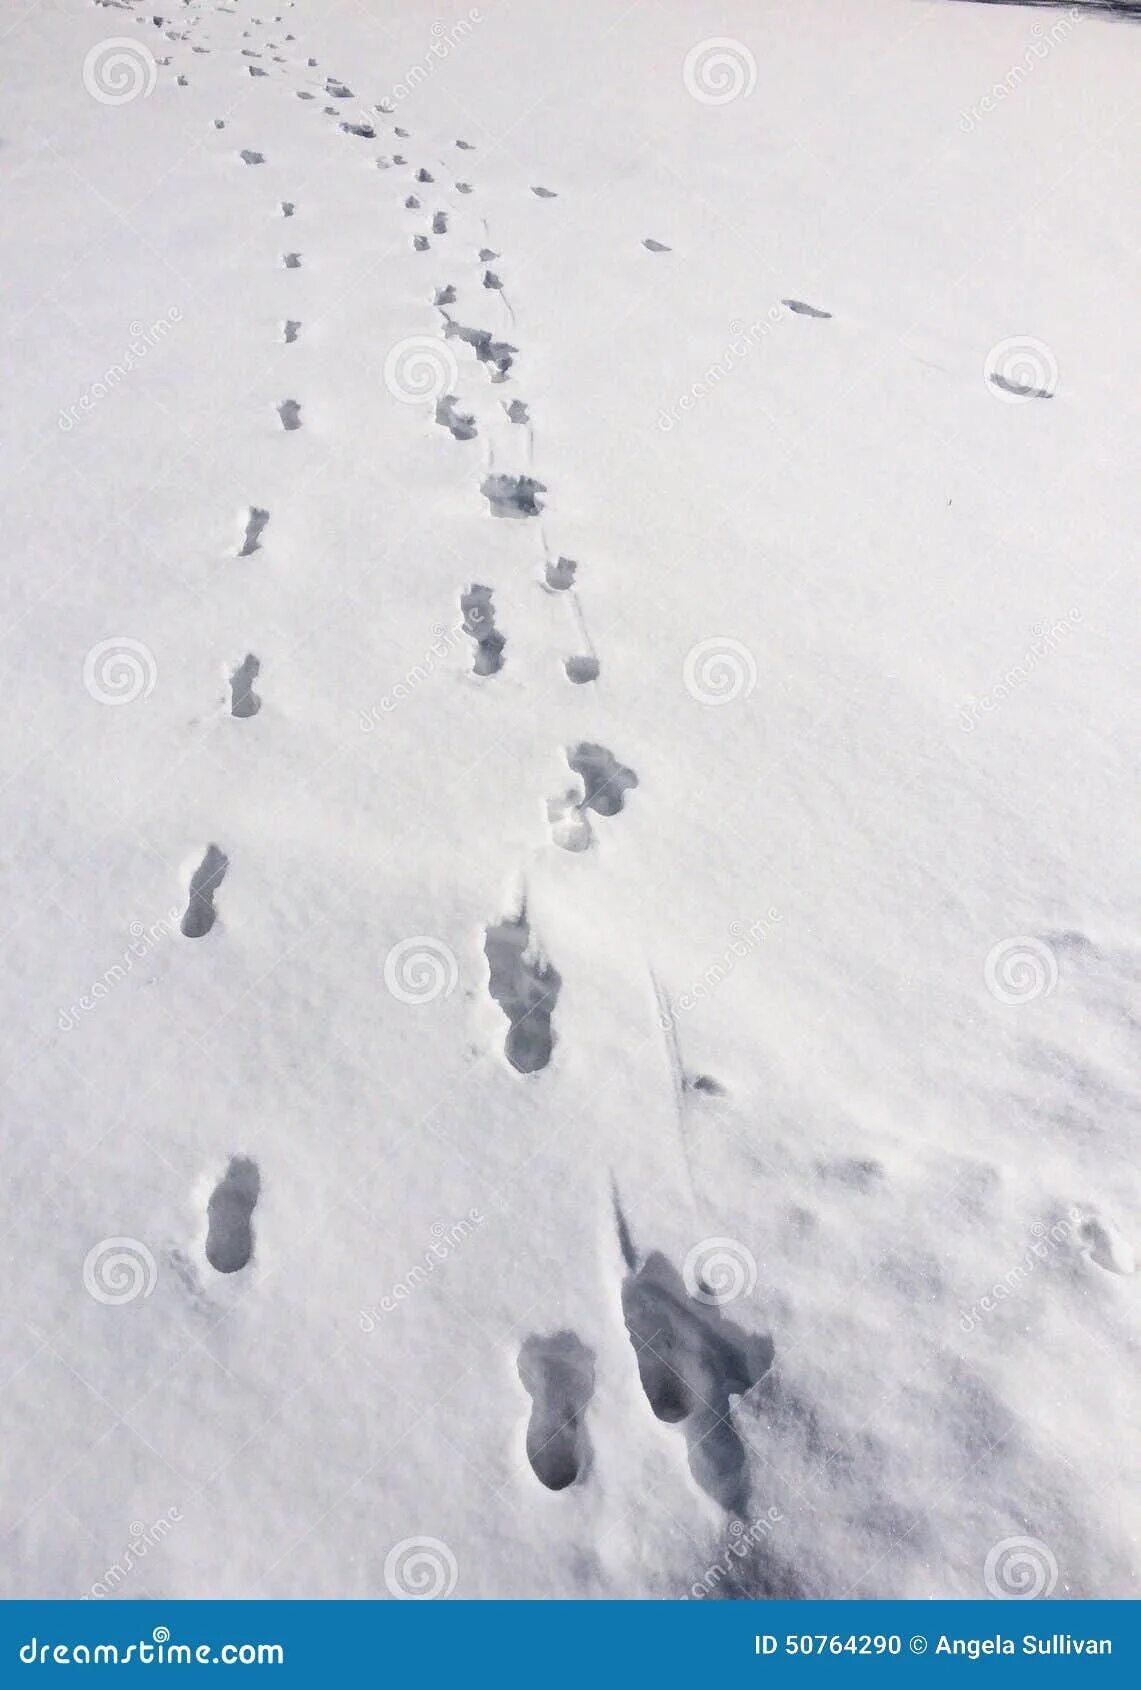 Следы на снегу. Следы медведя на снегу. Следы столбики на снегу. Медвежьи следы на снегу.